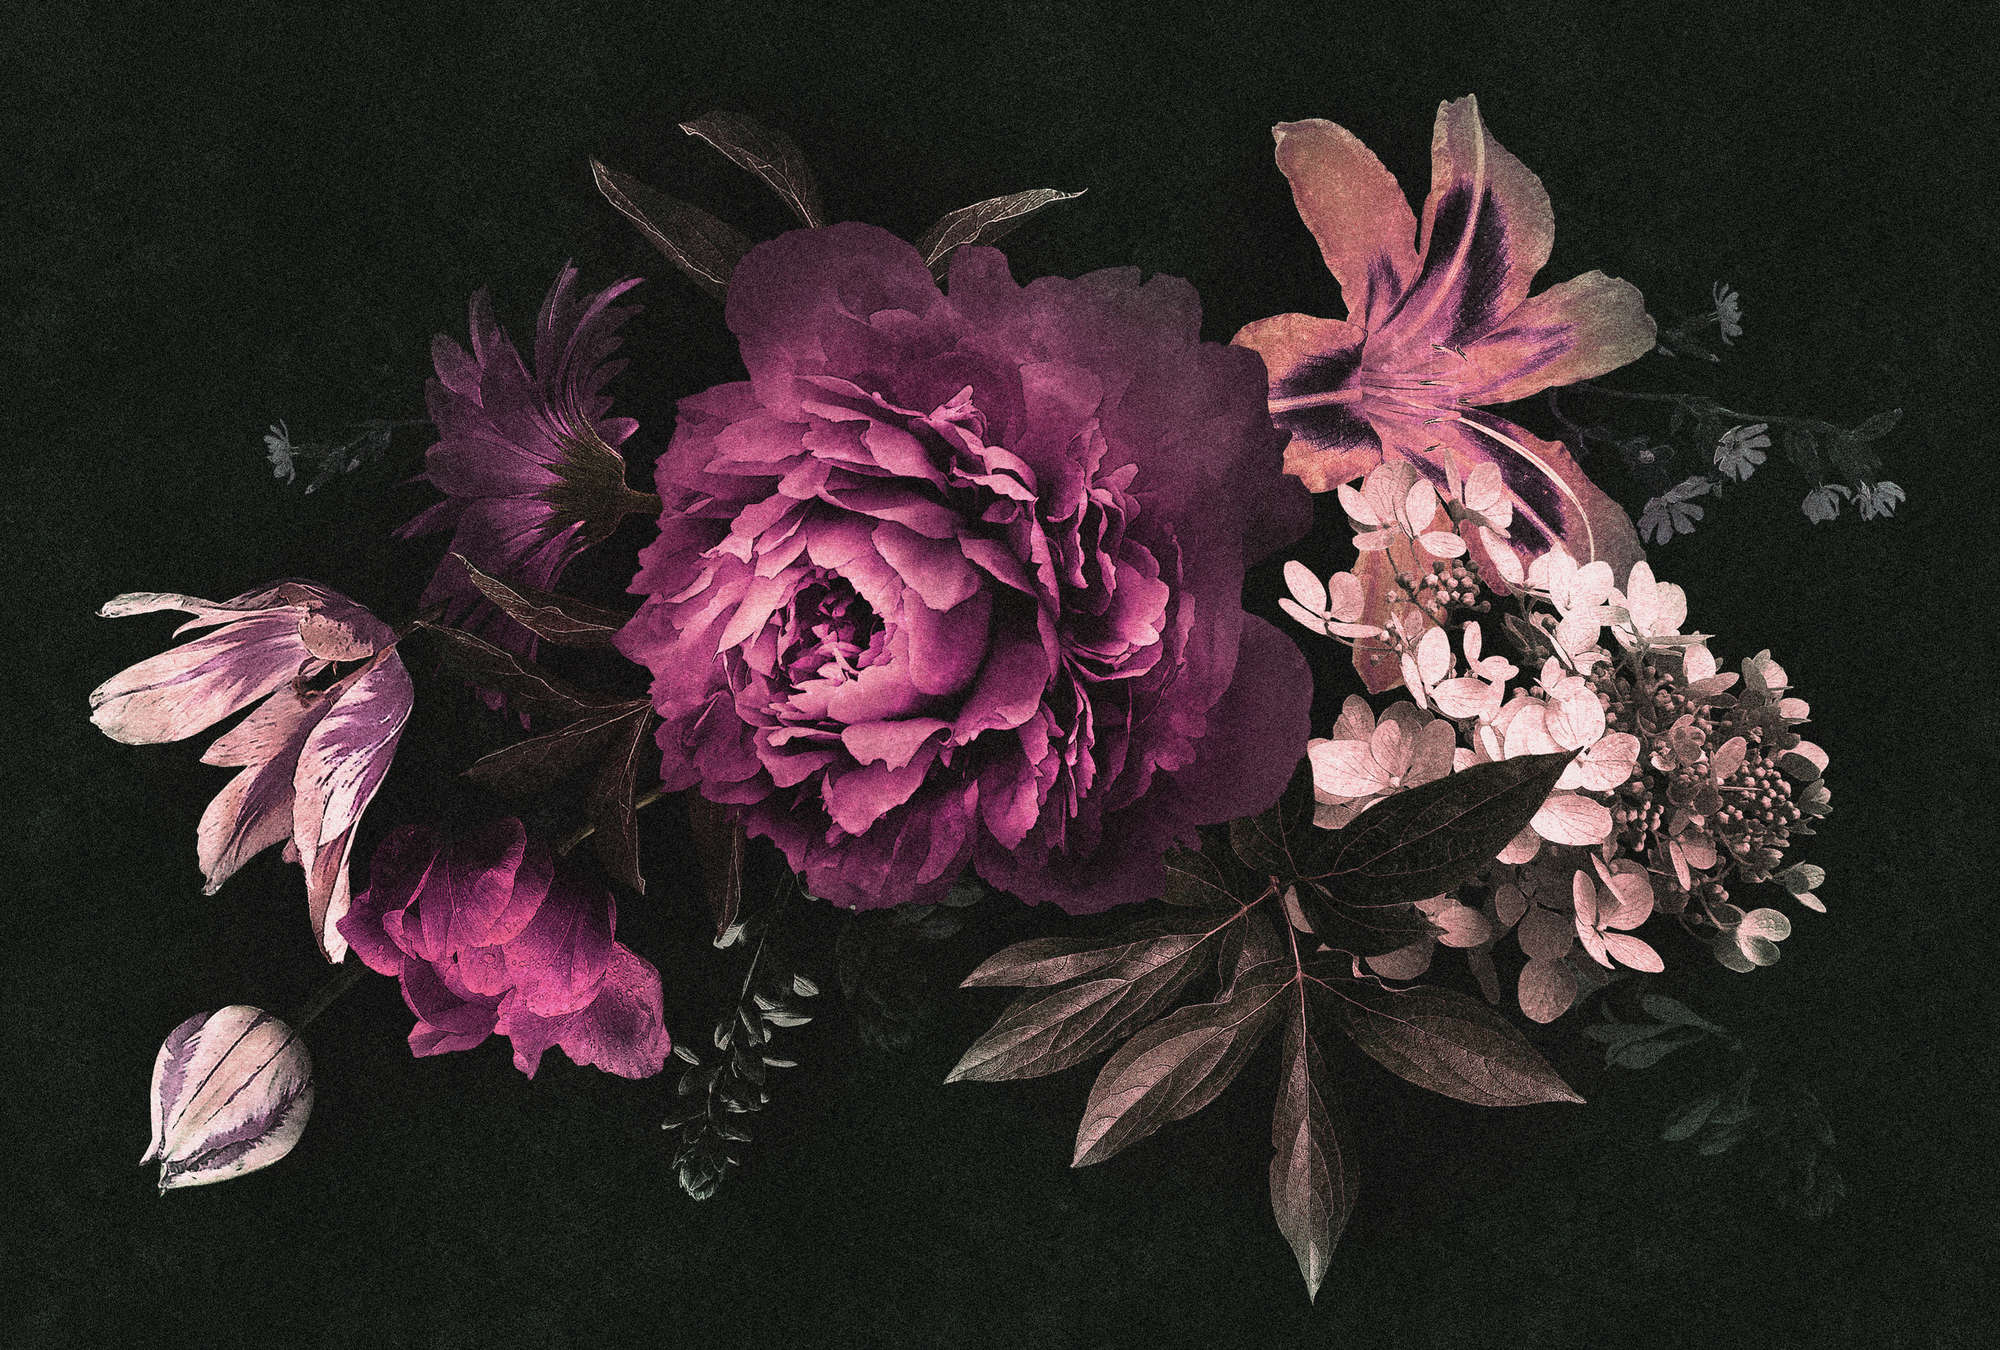             Drama queen 3 - romantisch bloemenboeket behang - kartonnen structuur - roze, zwart | parelmoer glad vlies
        